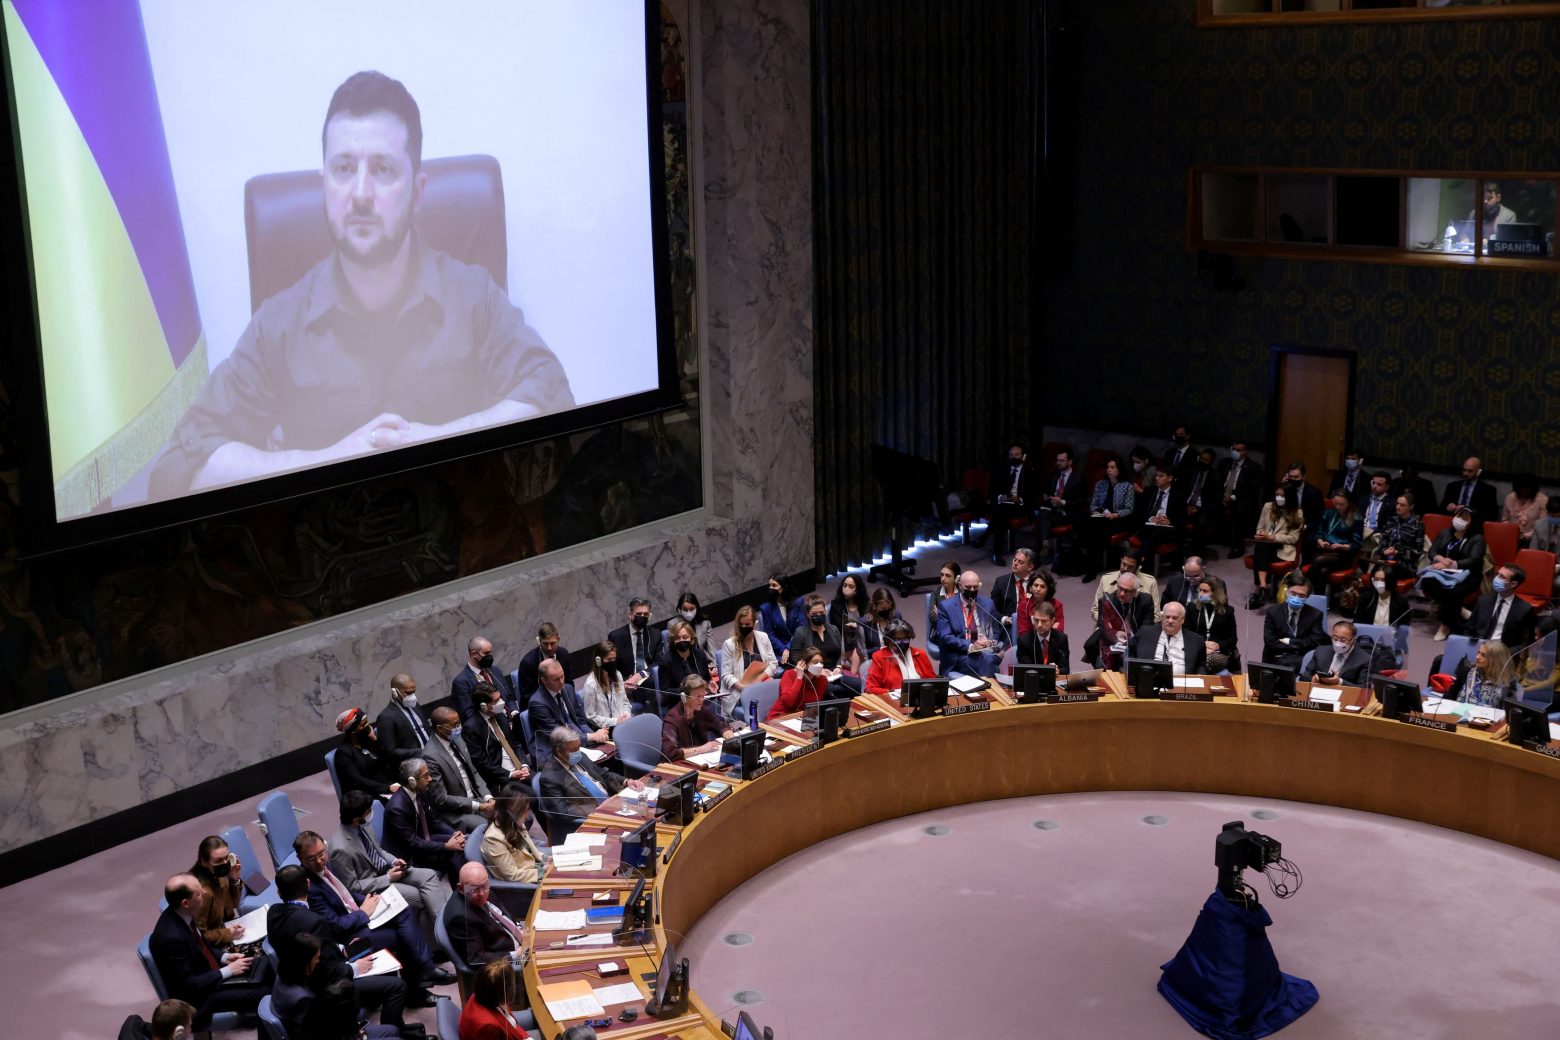 Ζελένσκι: Ανατριχίλα από το βίντεο που έδειξε στον ΟΗΕ με απανθρακωμένα και ακρωτηριασμένα πτώματα